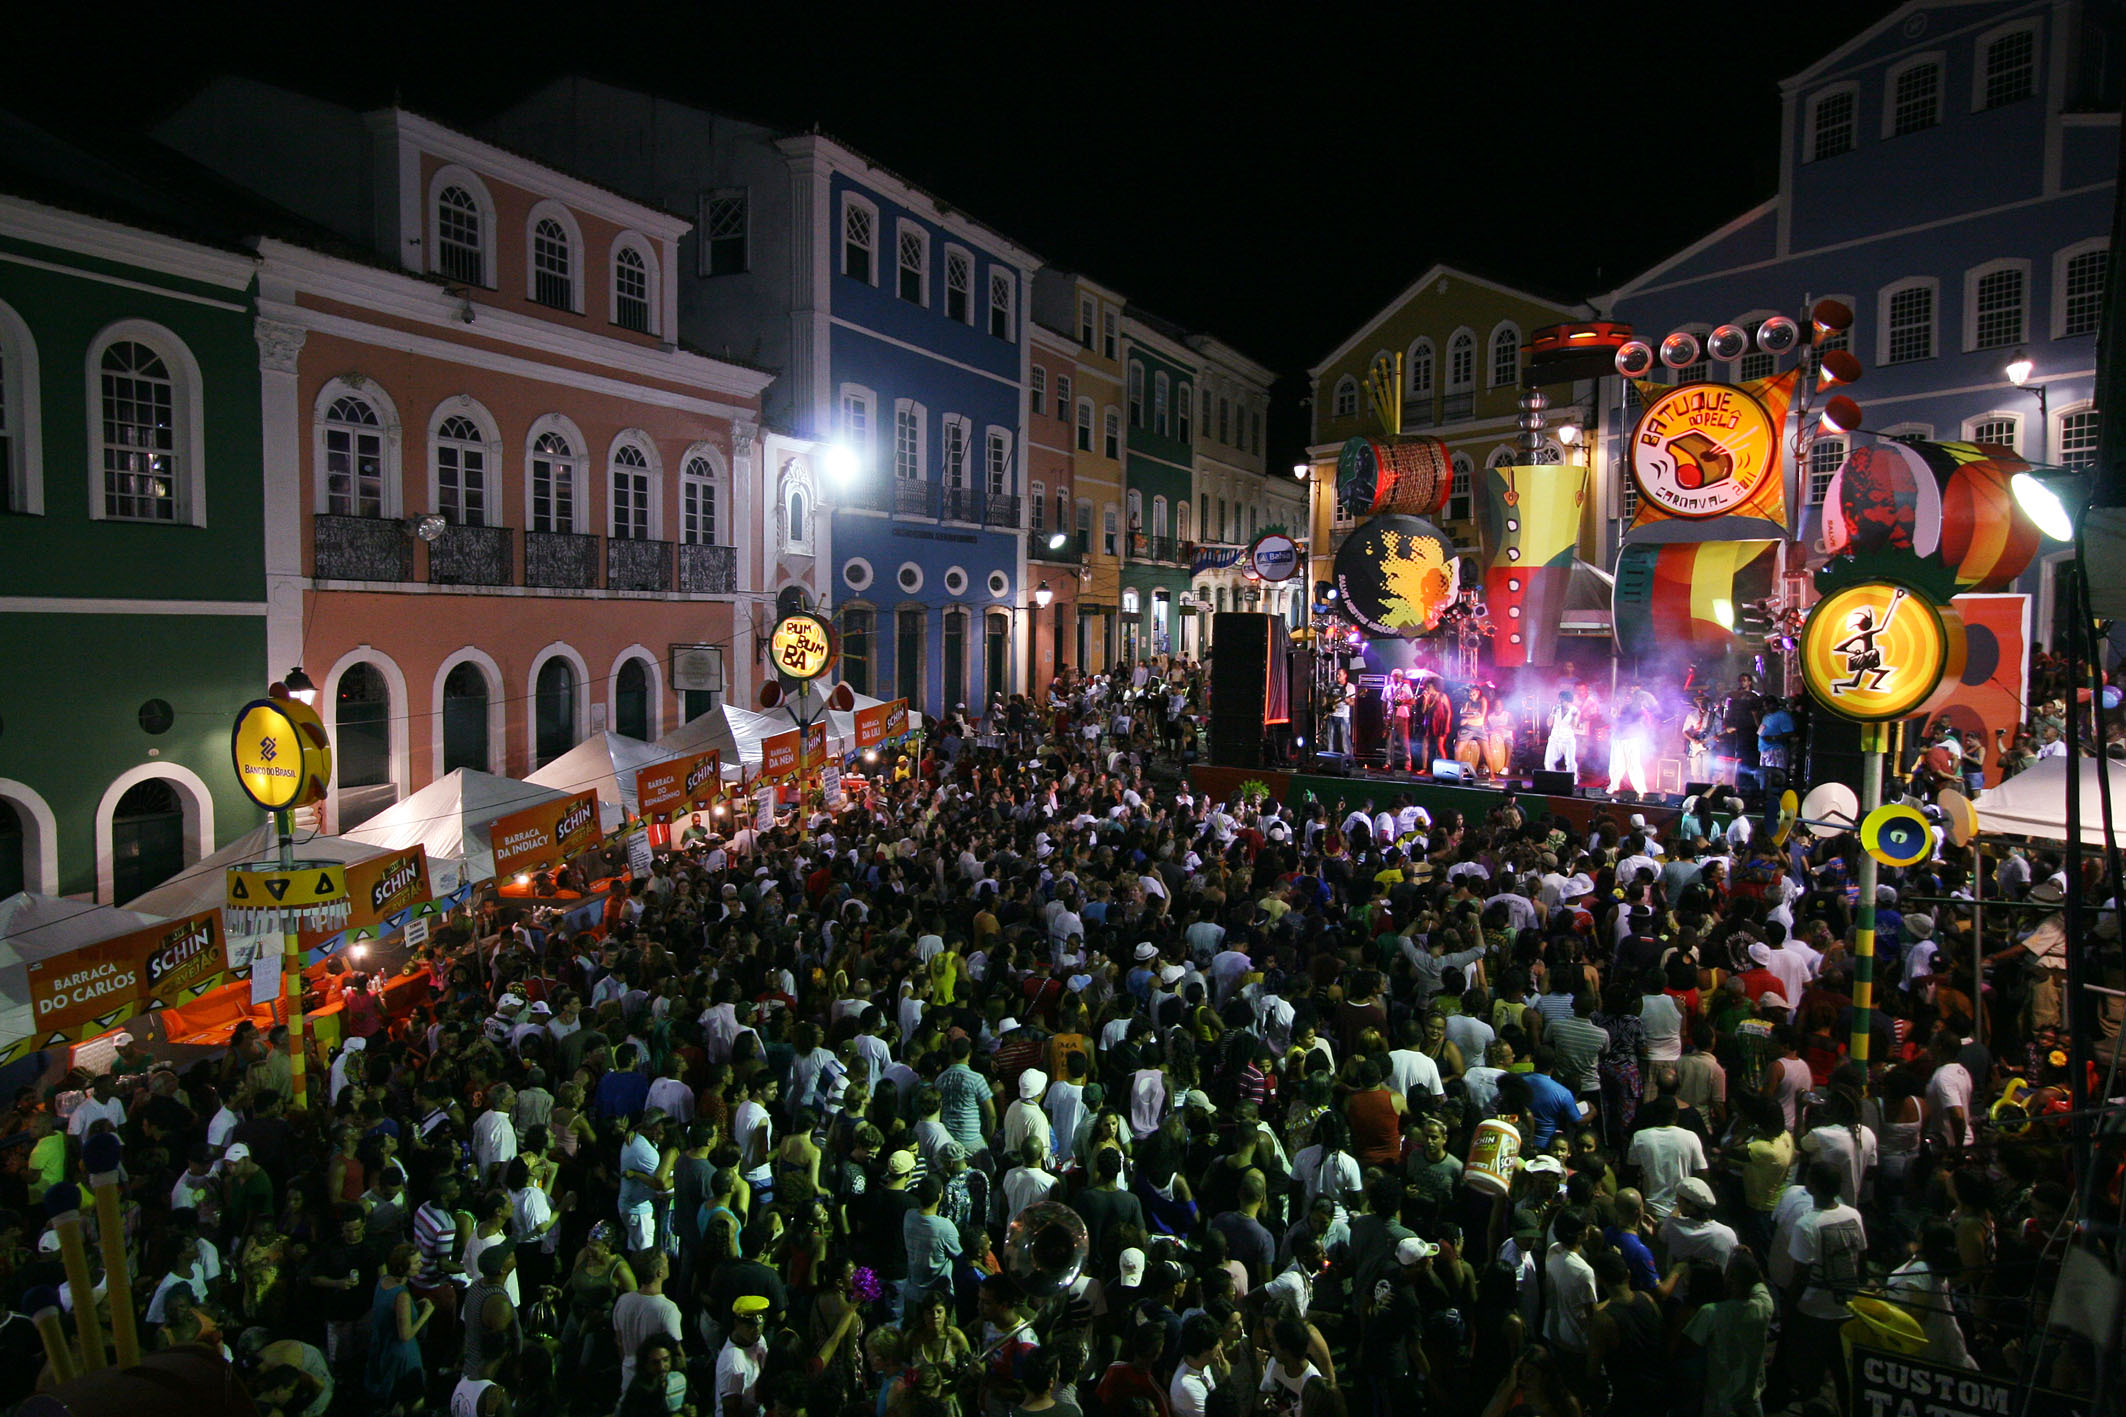 Foliões gospel preparam bloco carnavalesco para evangelizar em Salvador: “Estamos anunciando a volta de Cristo” Pelourinho-carnaval